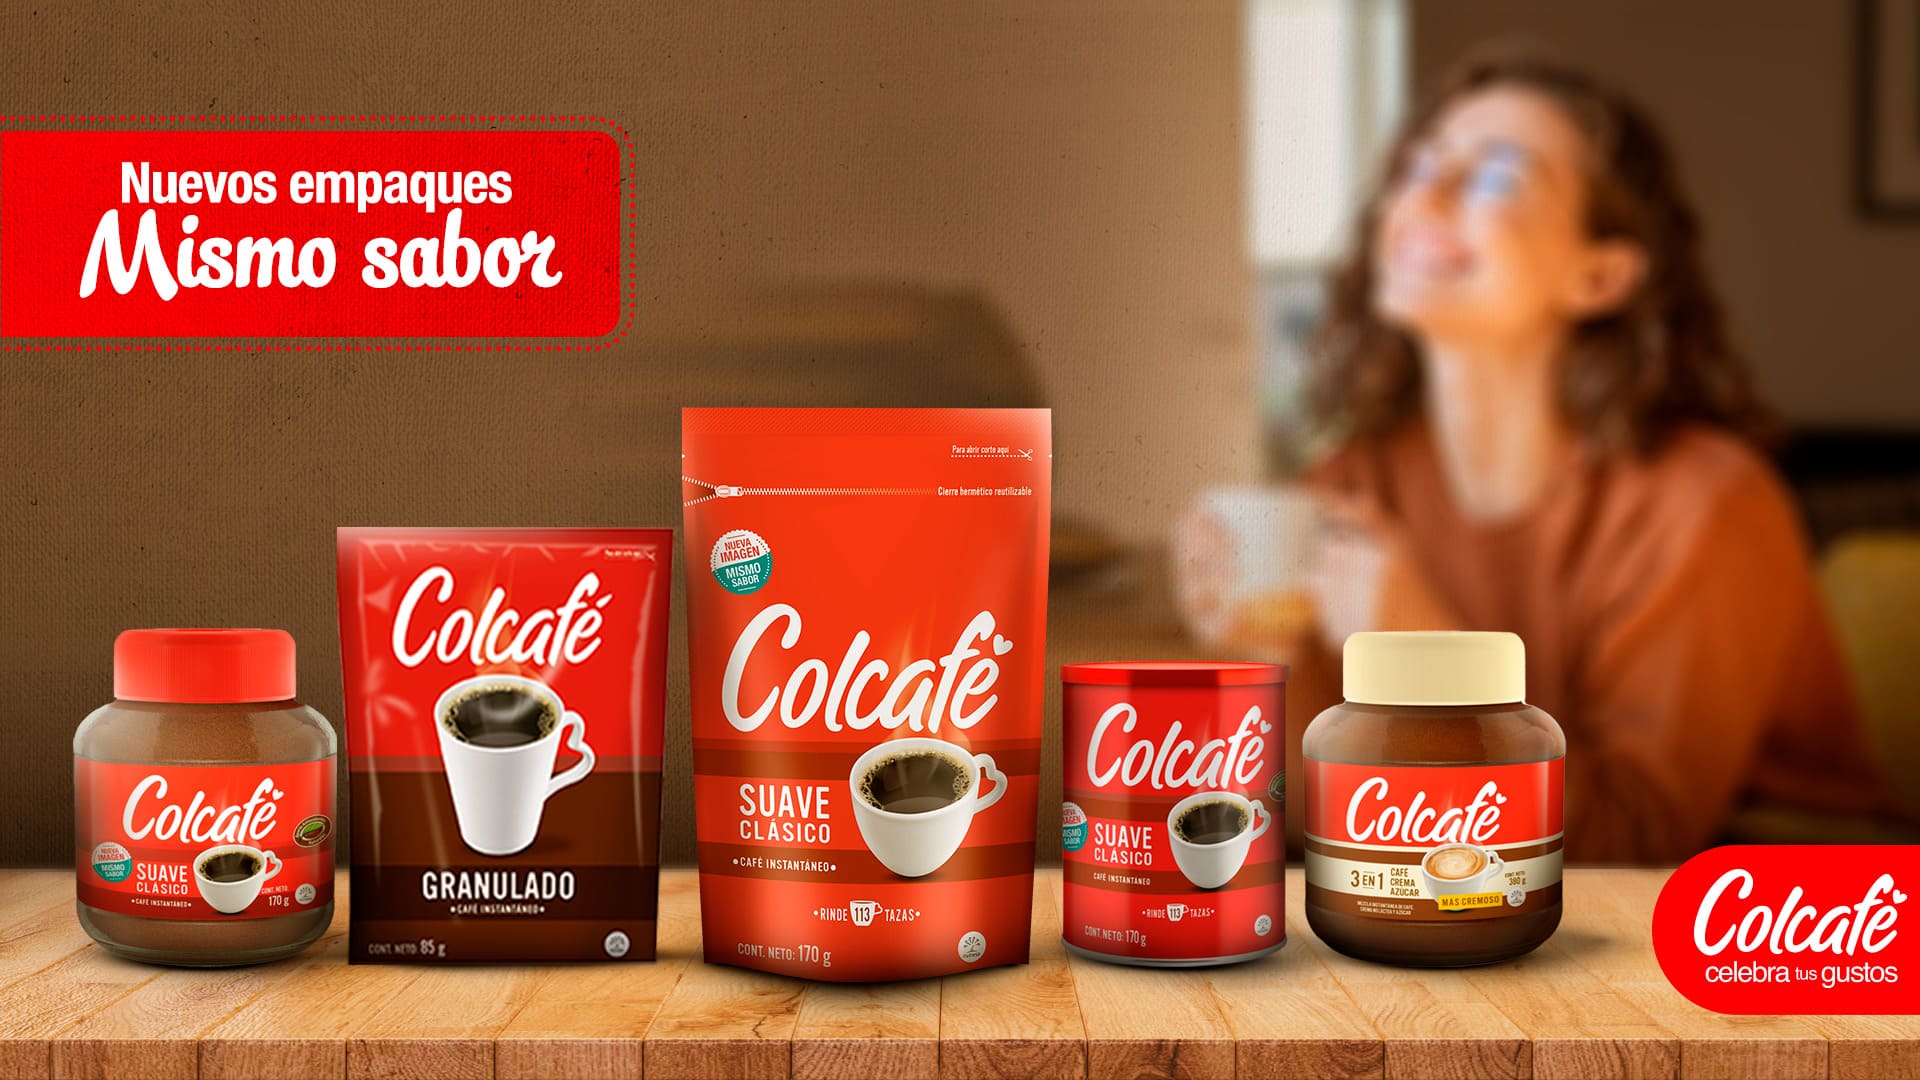 Creamos nuevas opciones de empaques para que sigas disfrutando el mismo sabor de tu Colcafé de siempre cómo más prefieras. ¡Colcafé celebra tus gustos!